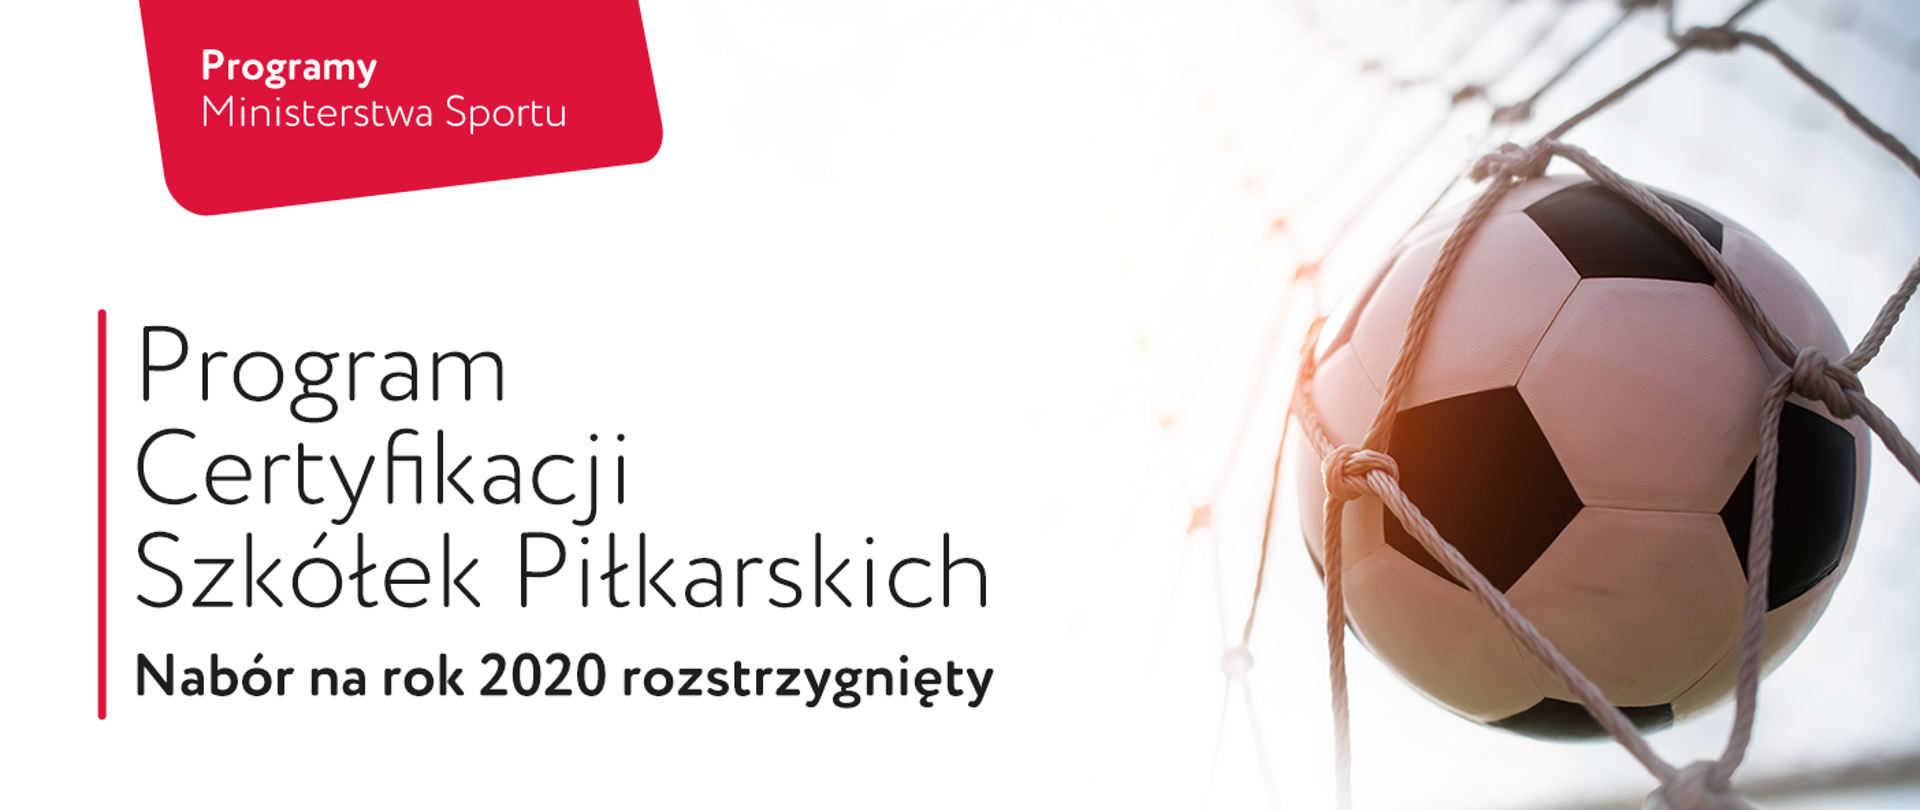 Grafika z napisem "Program Certyfikacji Szkółek Piłkarskich - Nabór na rok 2020 rozstrzygnięty". Po prawej stronie piłka nożna w siatce branki.